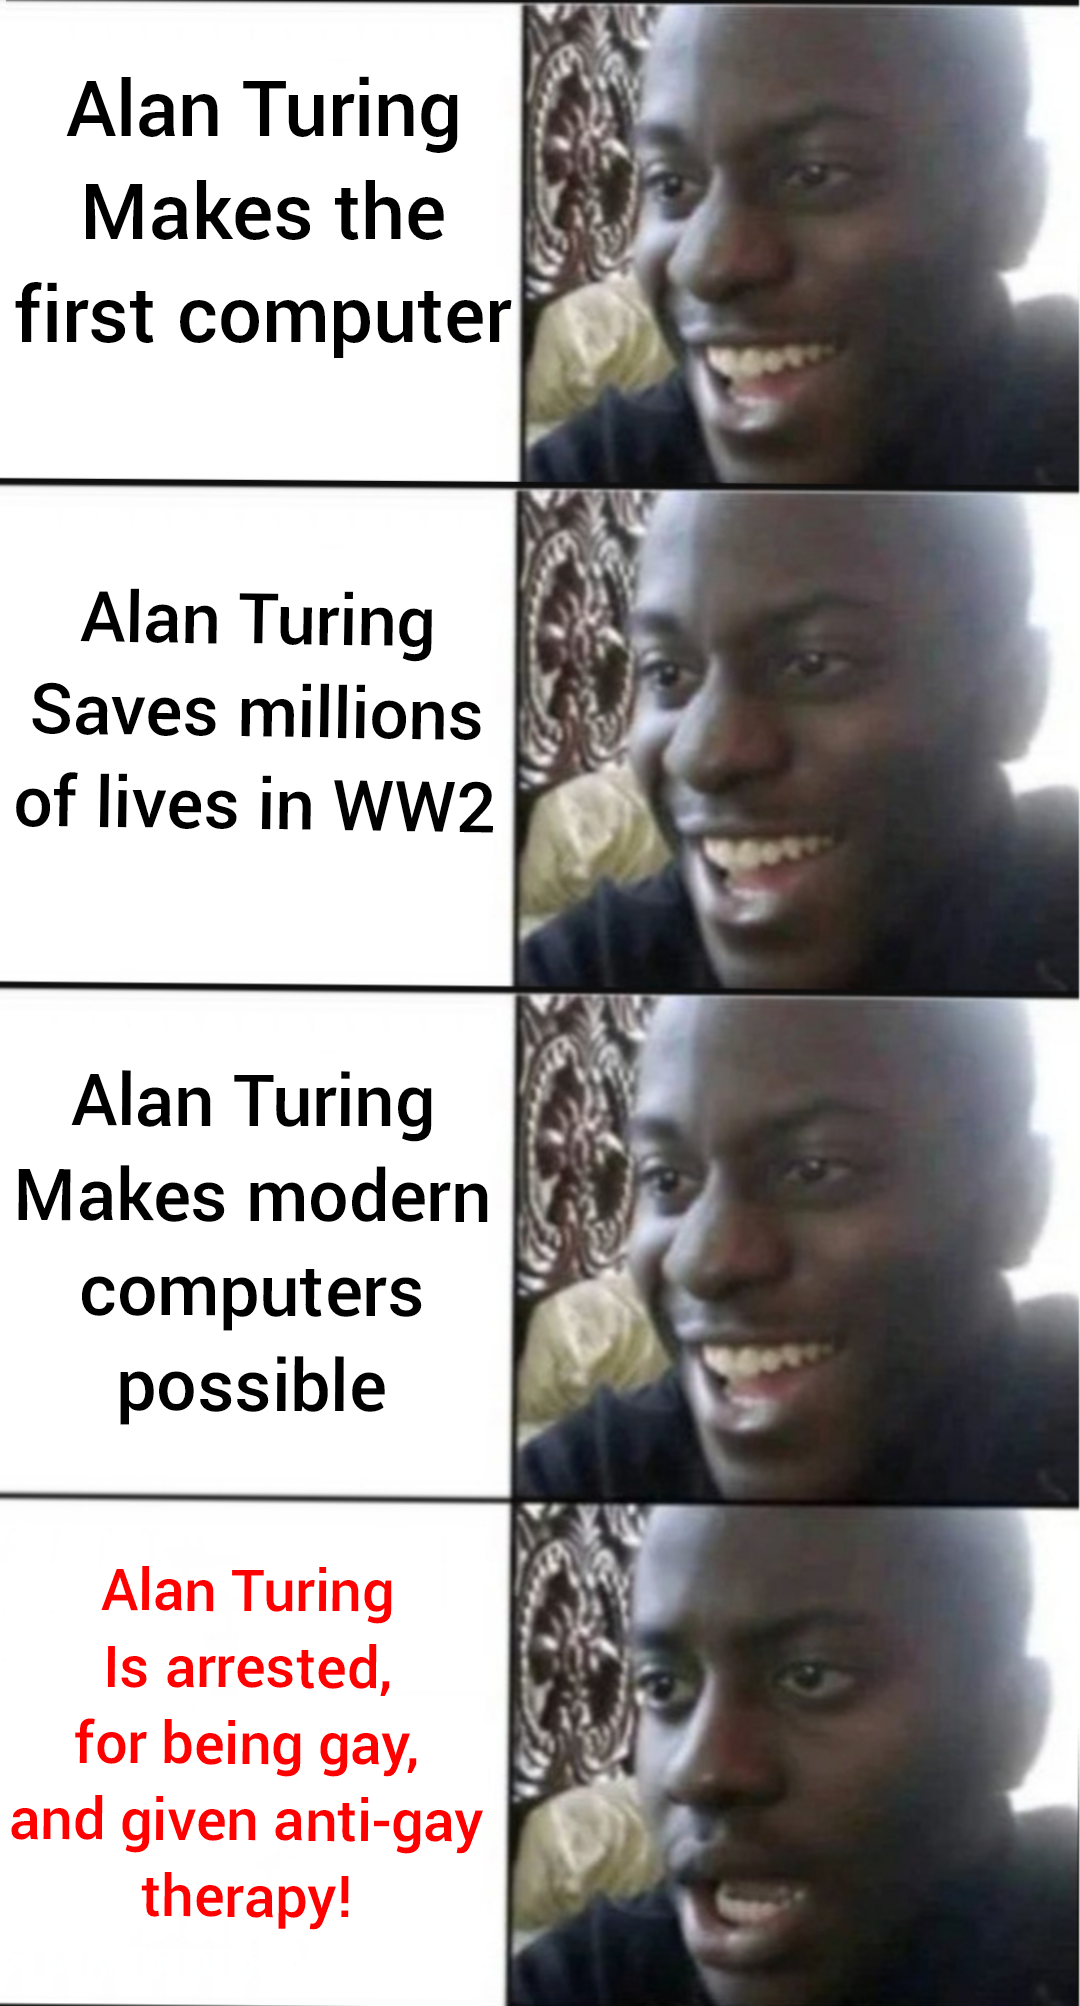 Alan Turing's Life!